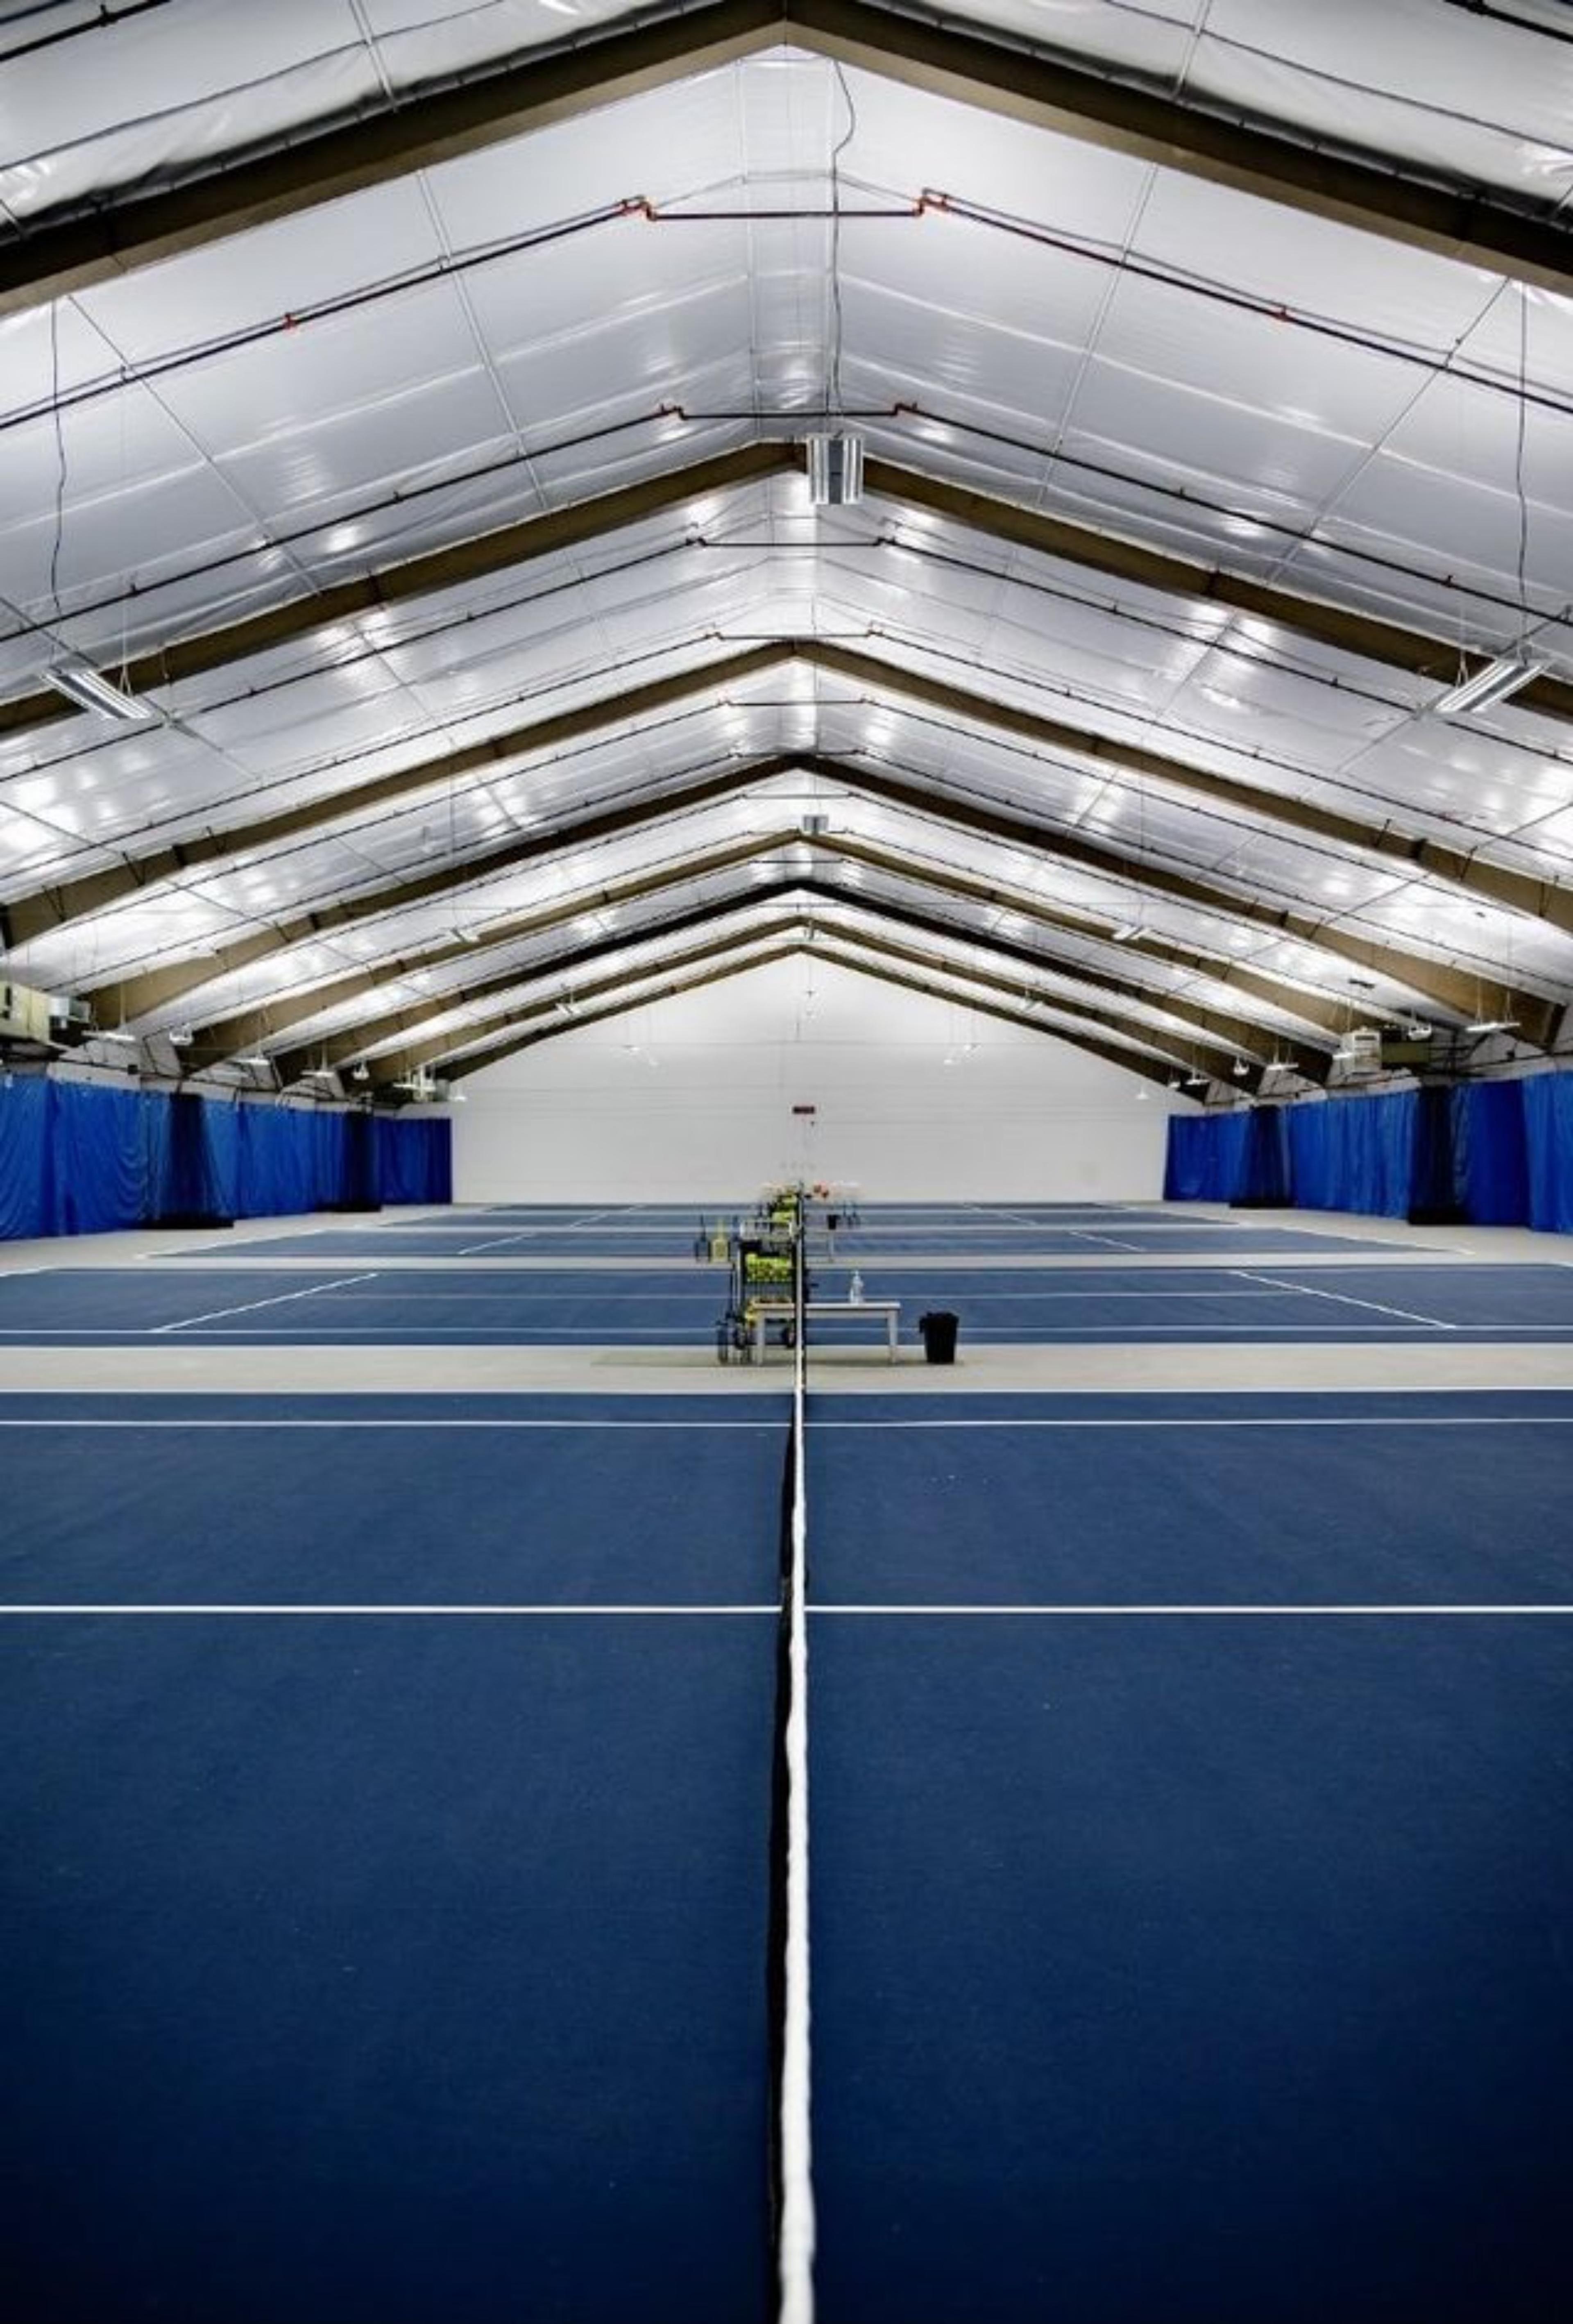 Strand Tennis Center